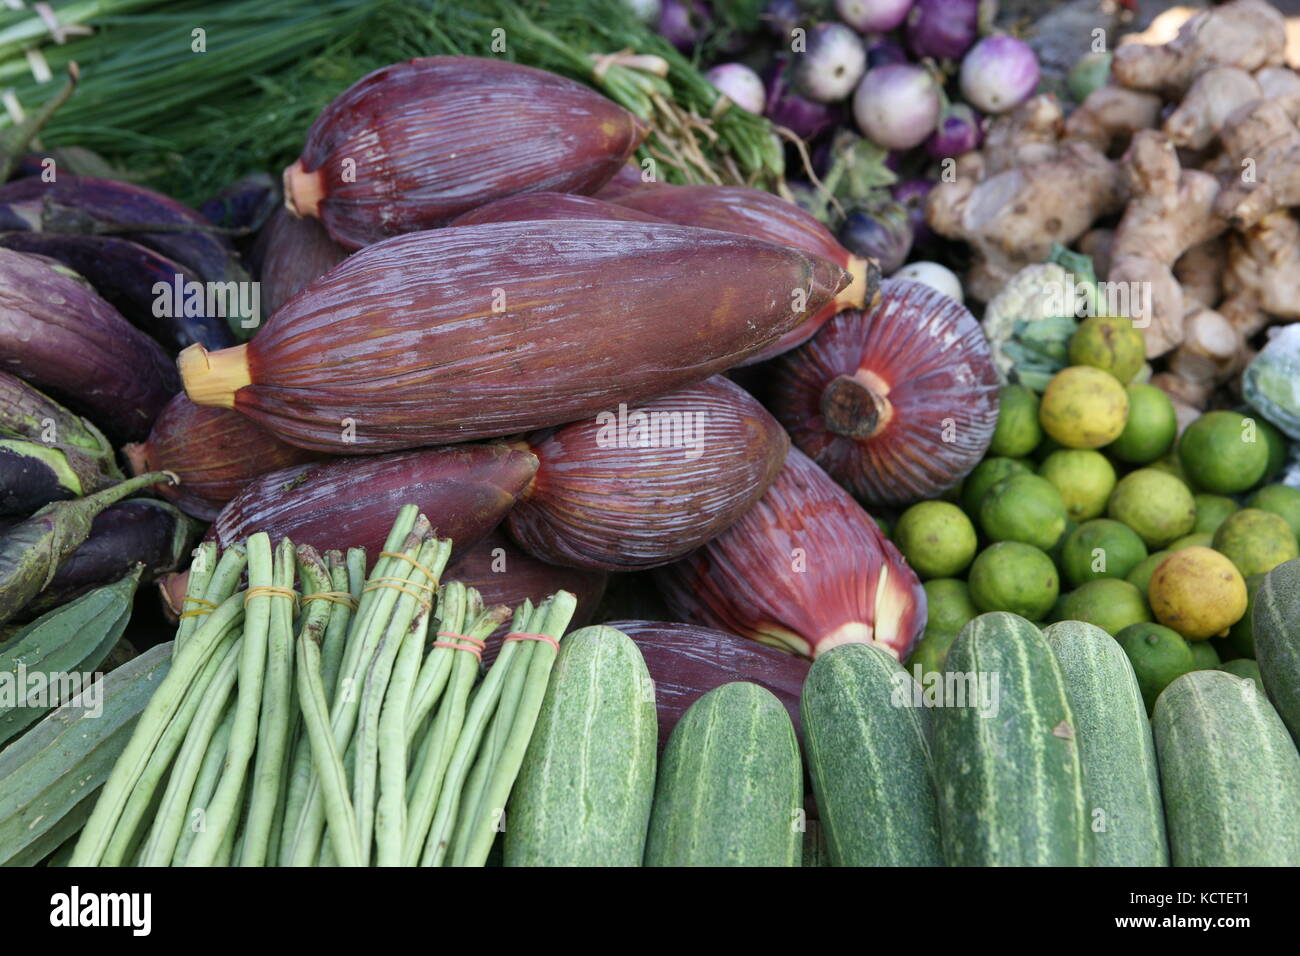 Exotsiches Gemüse auf asiatischem Markt - verdure esotiche sul mercato asiatico Foto Stock